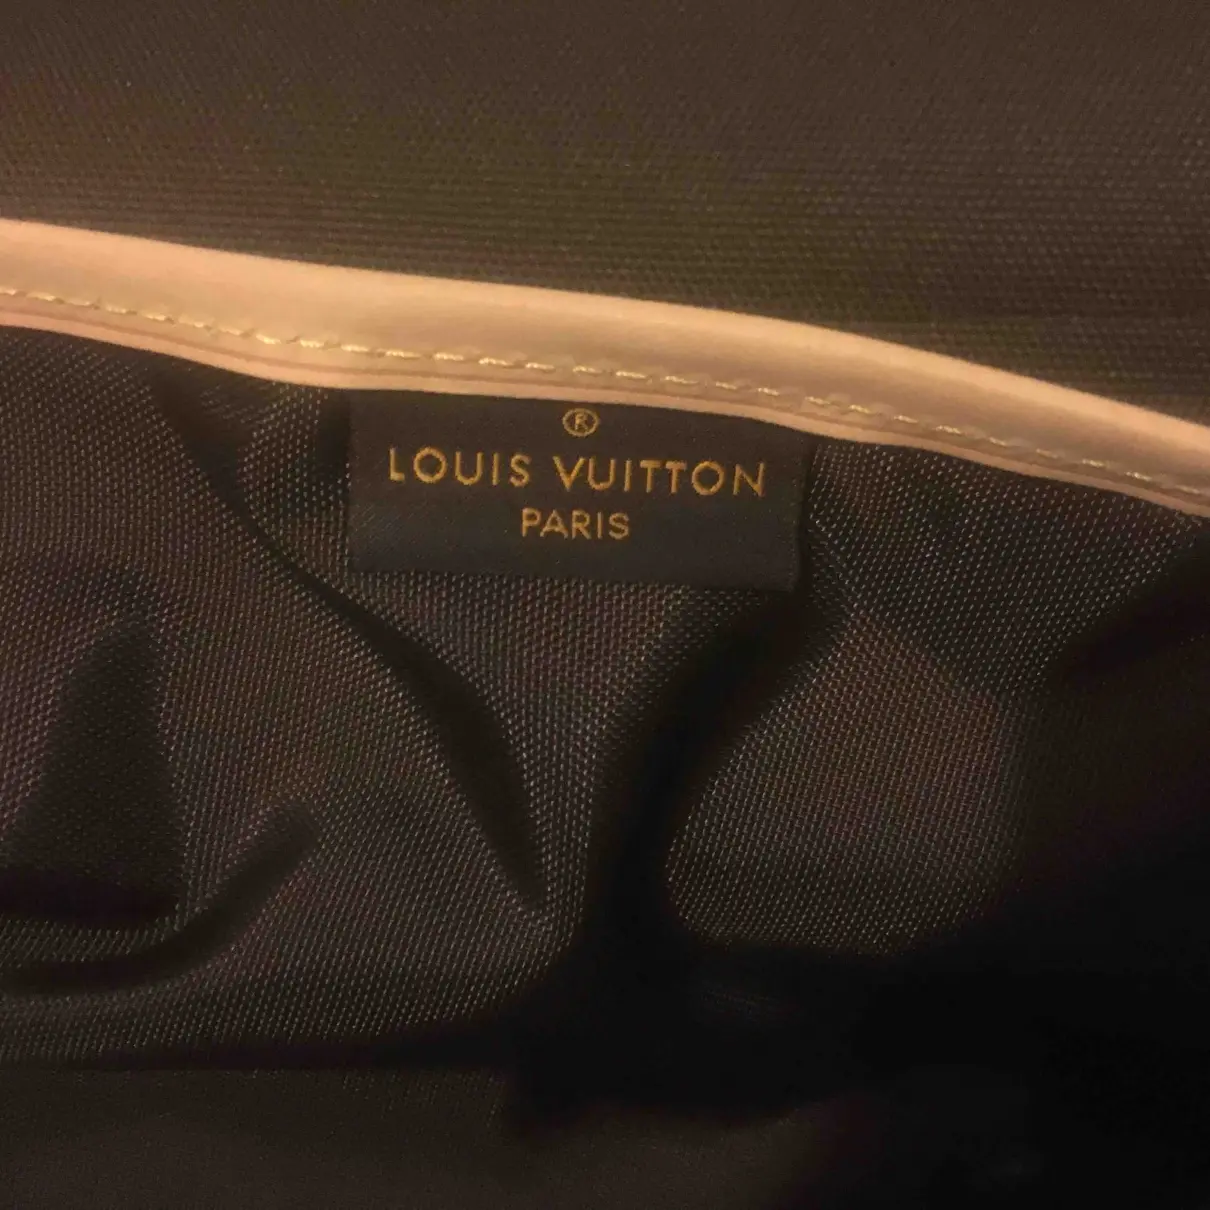 Garment cloth travel bag Louis Vuitton